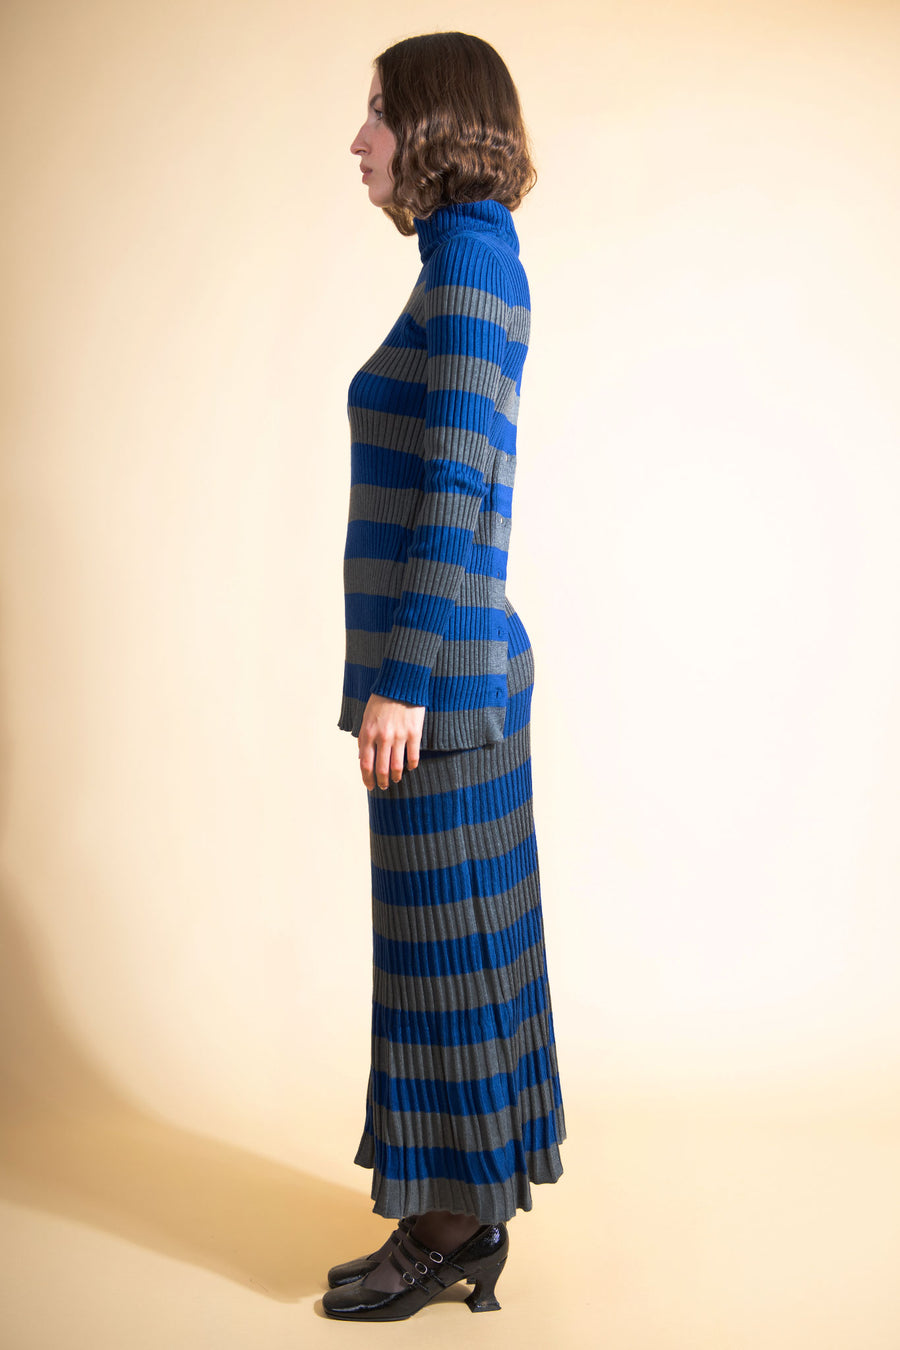 BATSHEVA - Mia Sweater in Blue & Grey Stripe